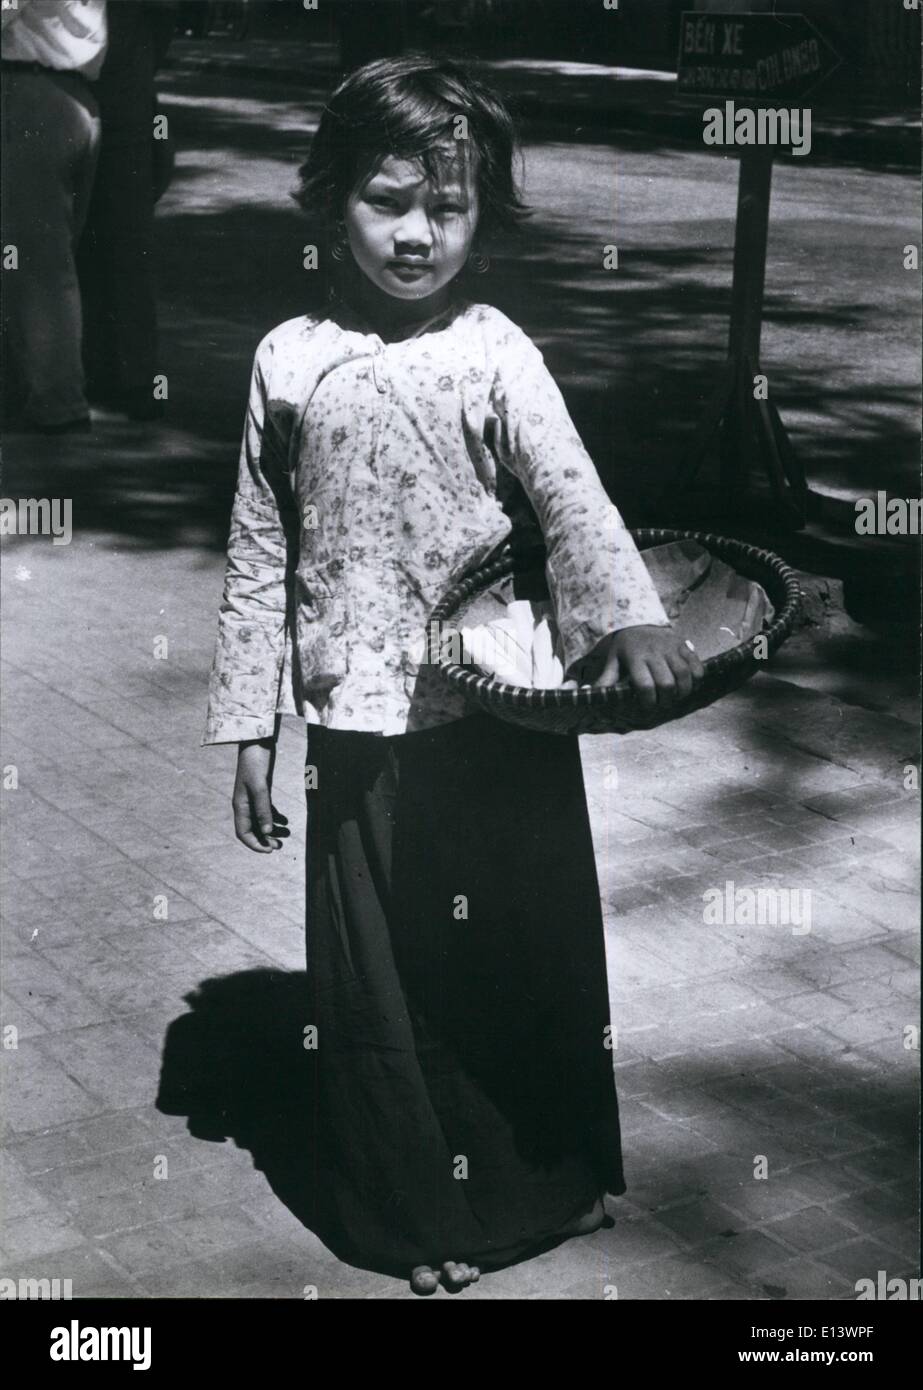 27 mar 2012 - Solo un bambino, ma lei è fuori dalla mattina a mezzanotte vende noccioline per le strade di Saigon. Foto Stock